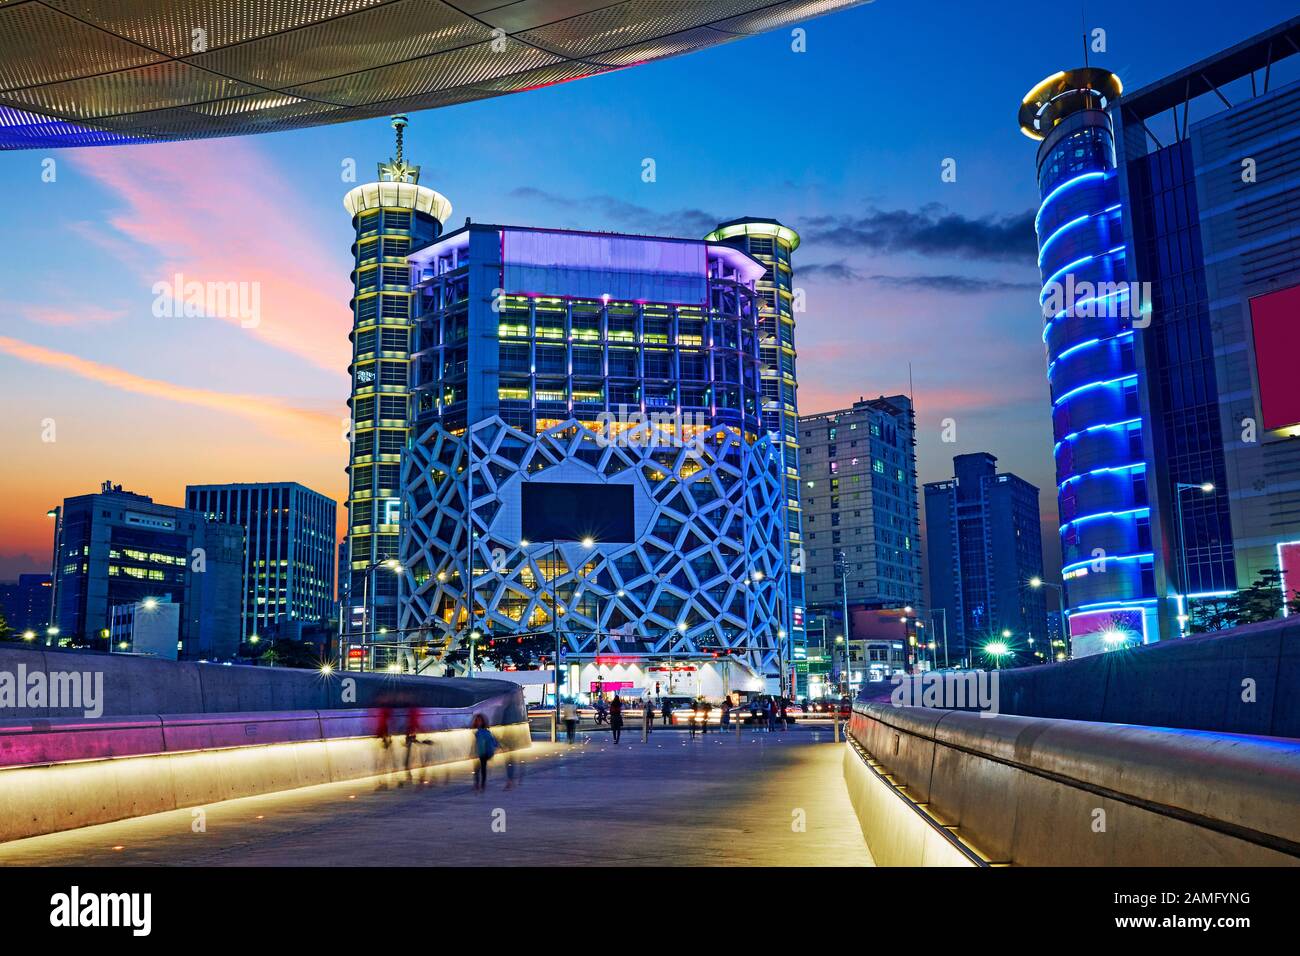 Le Dongdaemun Design plaza (conçu par Zaha Hadid) et le quartier des commerces de Séoul illuminés au crépuscule Banque D'Images